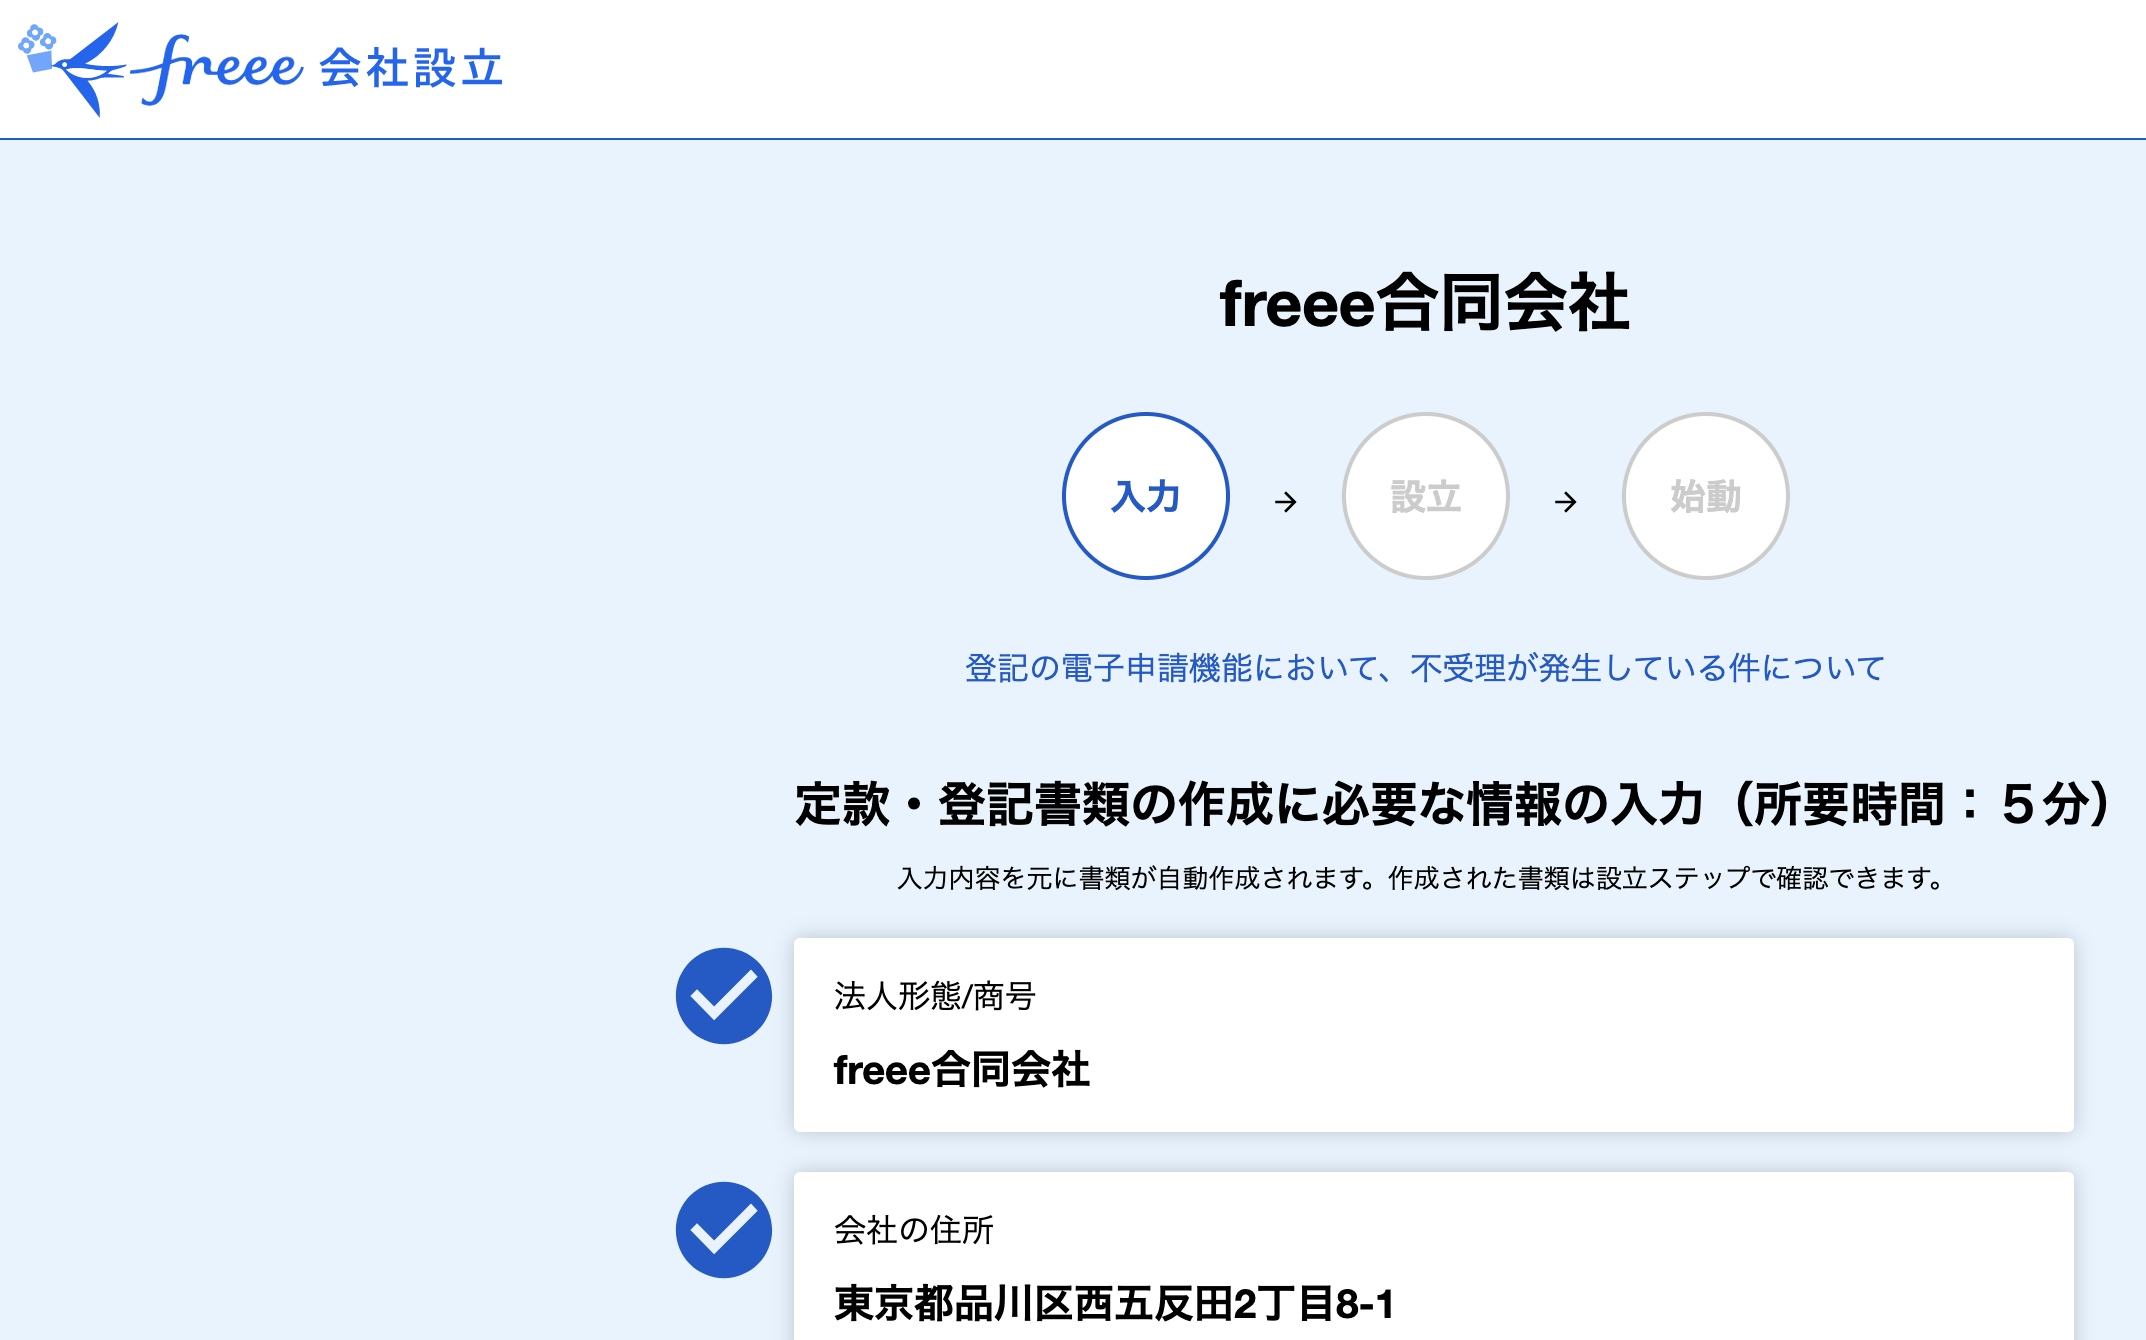 freee会社設立 操作画面